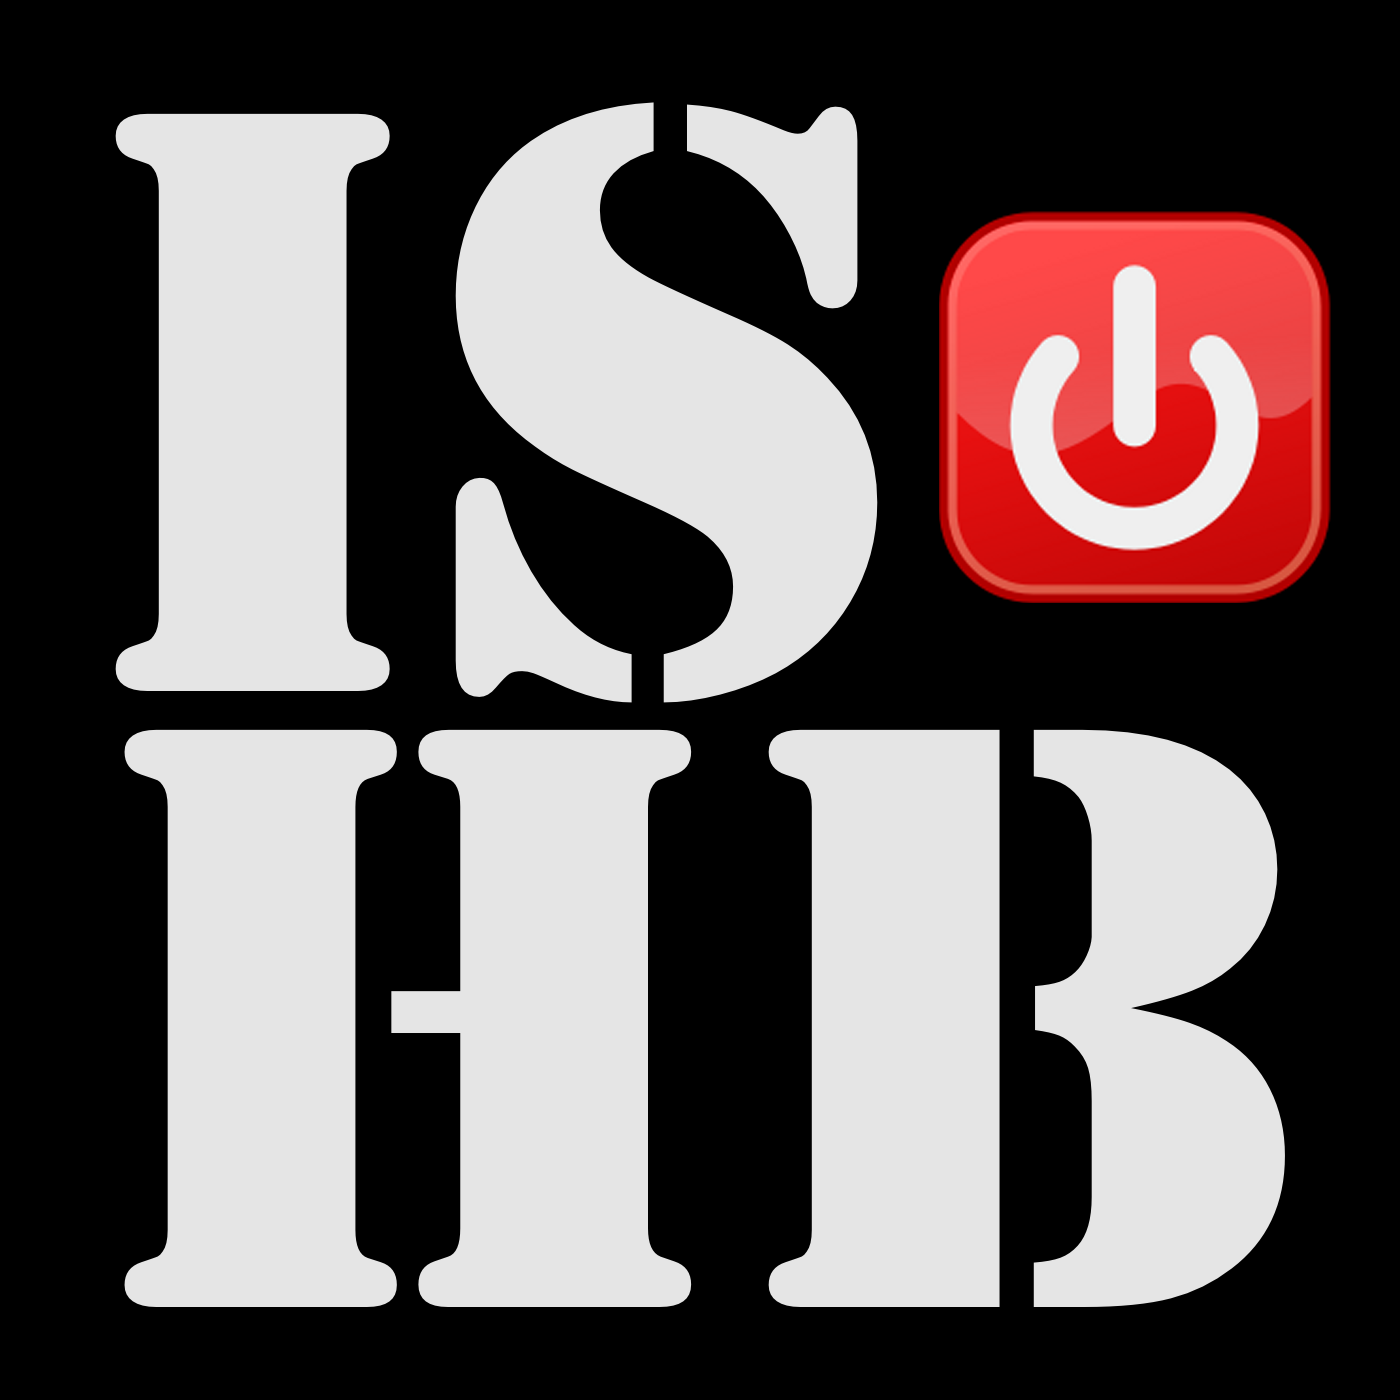 ishb_logo